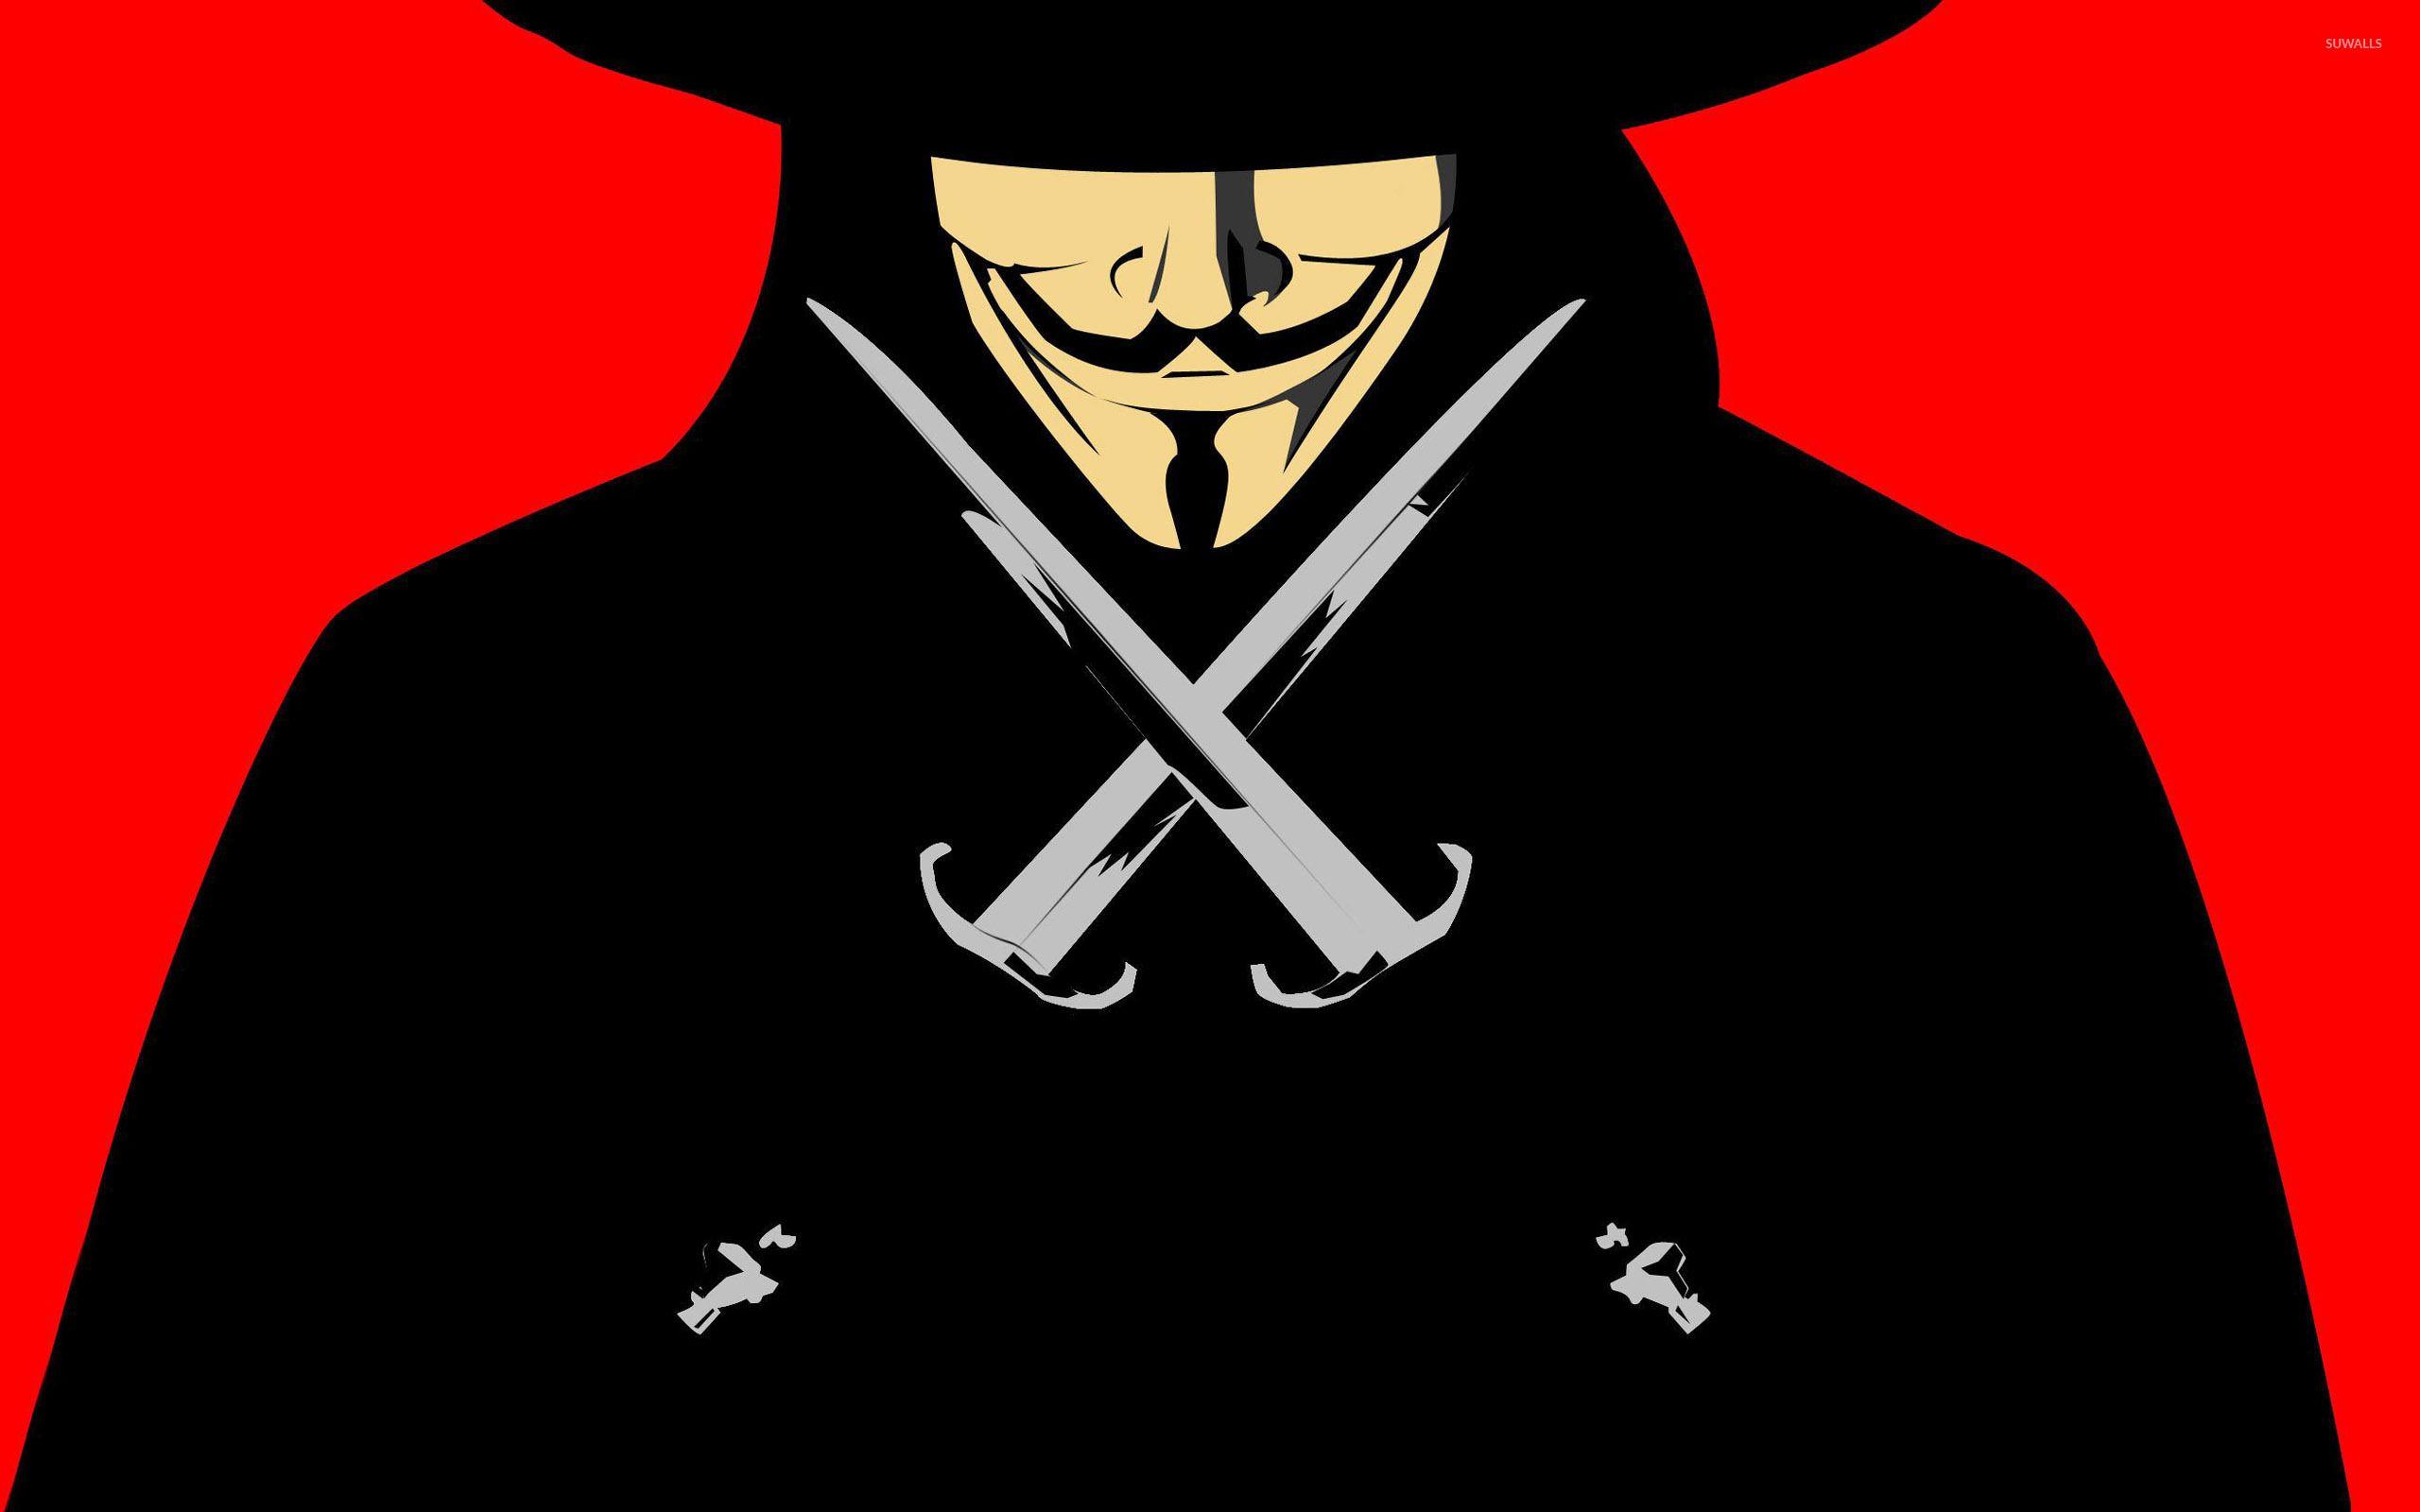 V for Vendetta Wallpapers - Top Free V for Vendetta Backgrounds